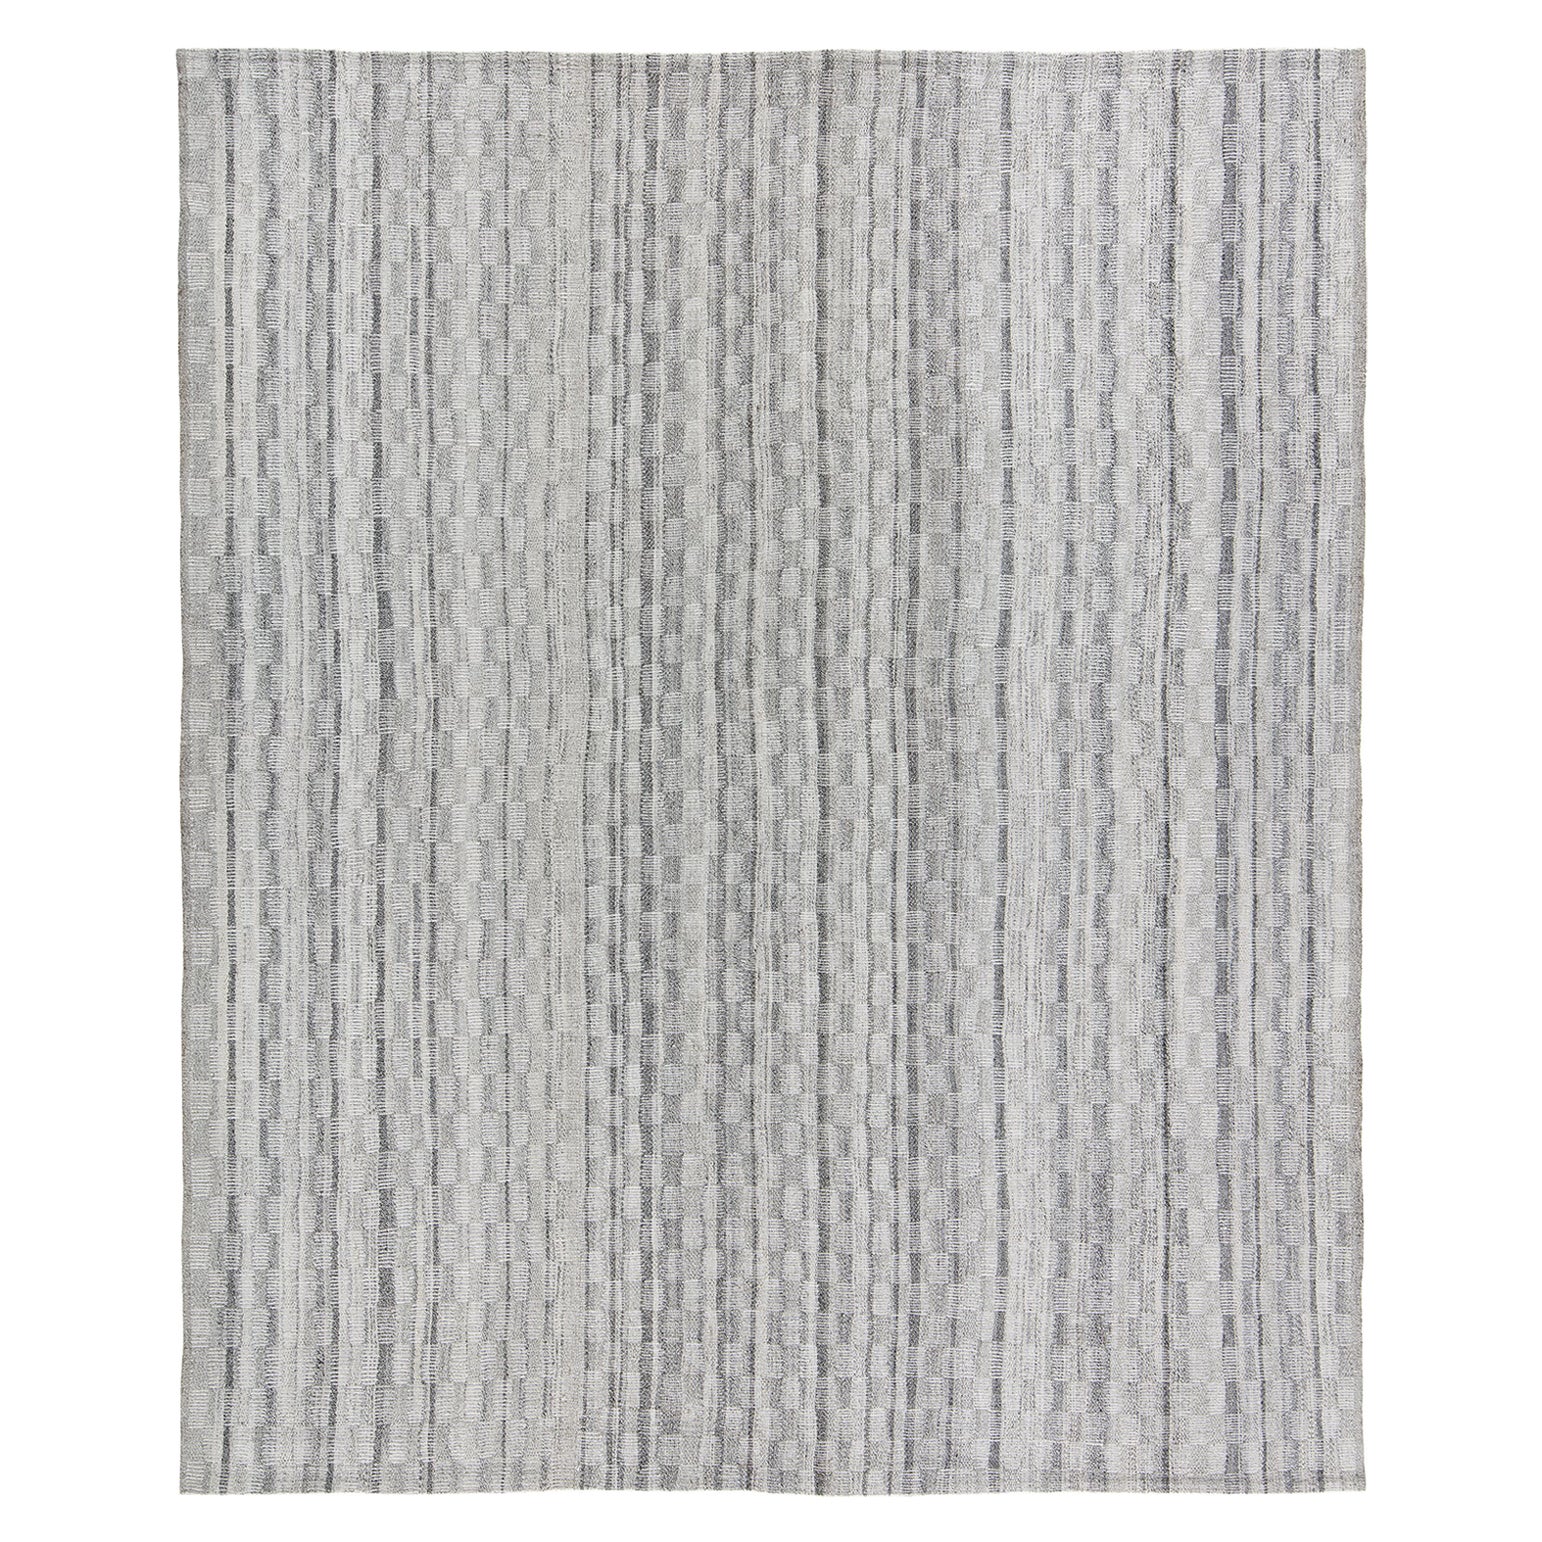 Mid-Century Modern Style Minimalist Charmo Pattern Flatweave Rug